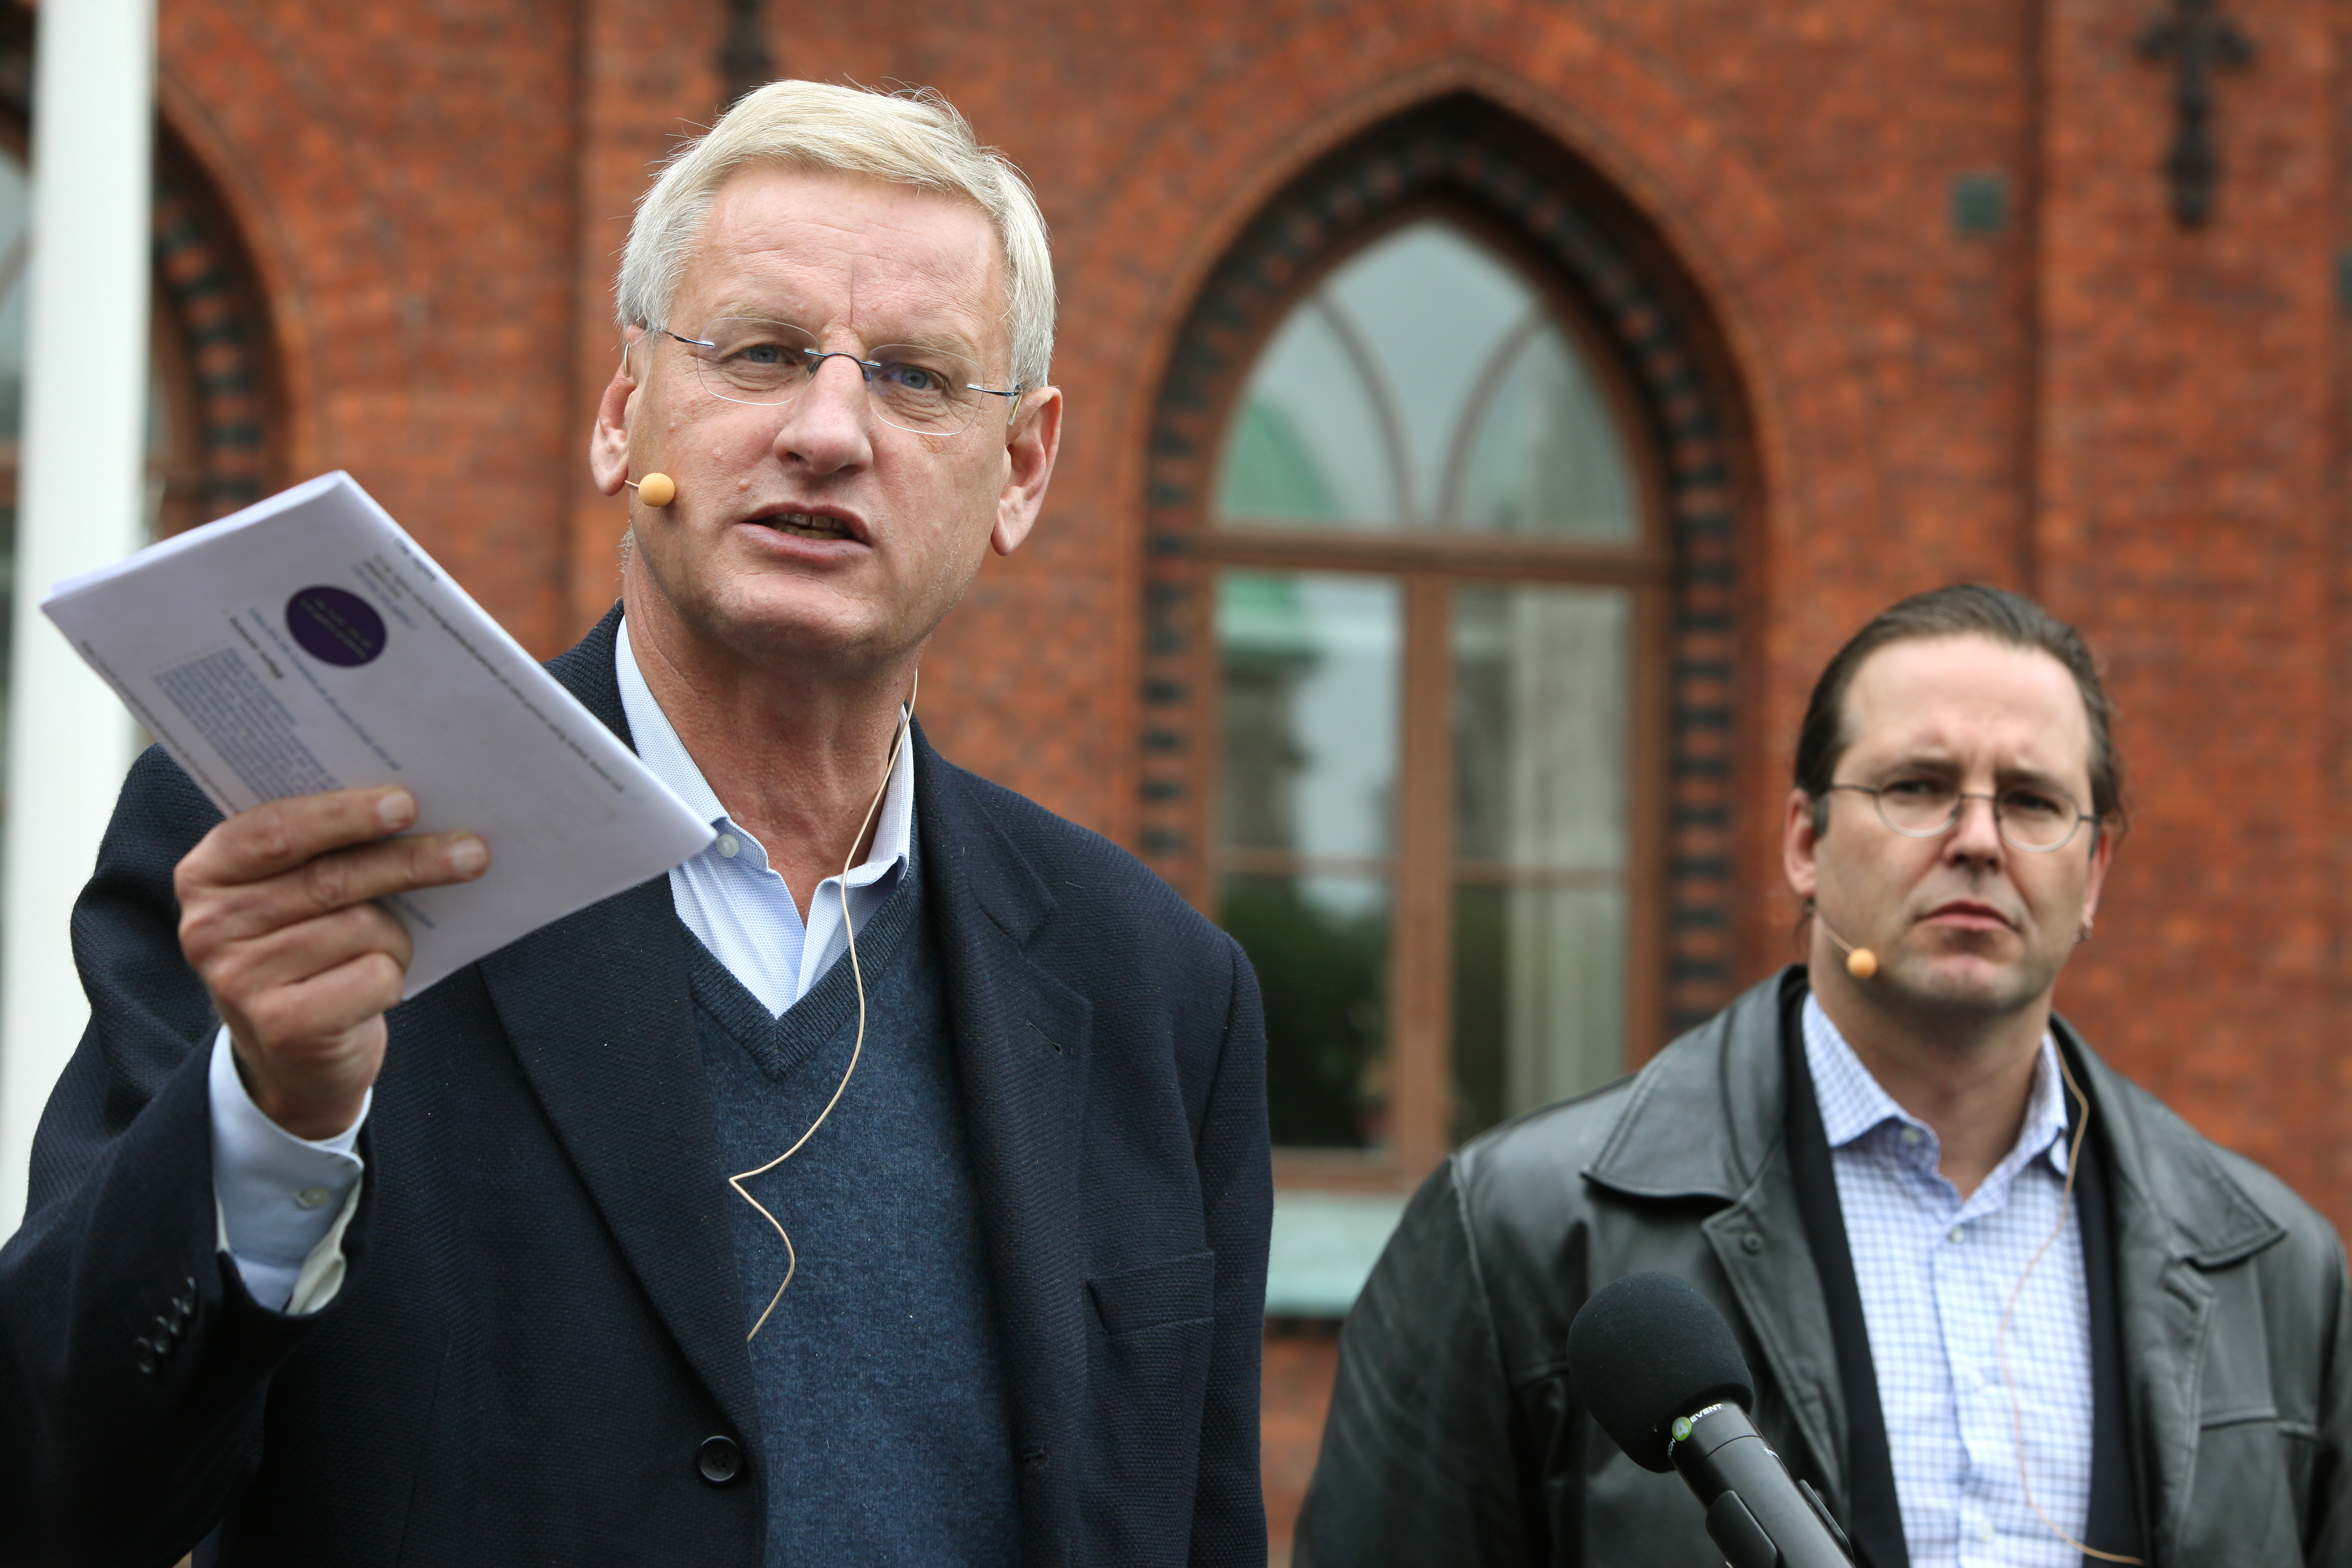 Alliansen, Anders Borg, Carl Bildt, Riksdagsvalet 2010, Sverigedemokraterna, Fredrik Reinfeldt